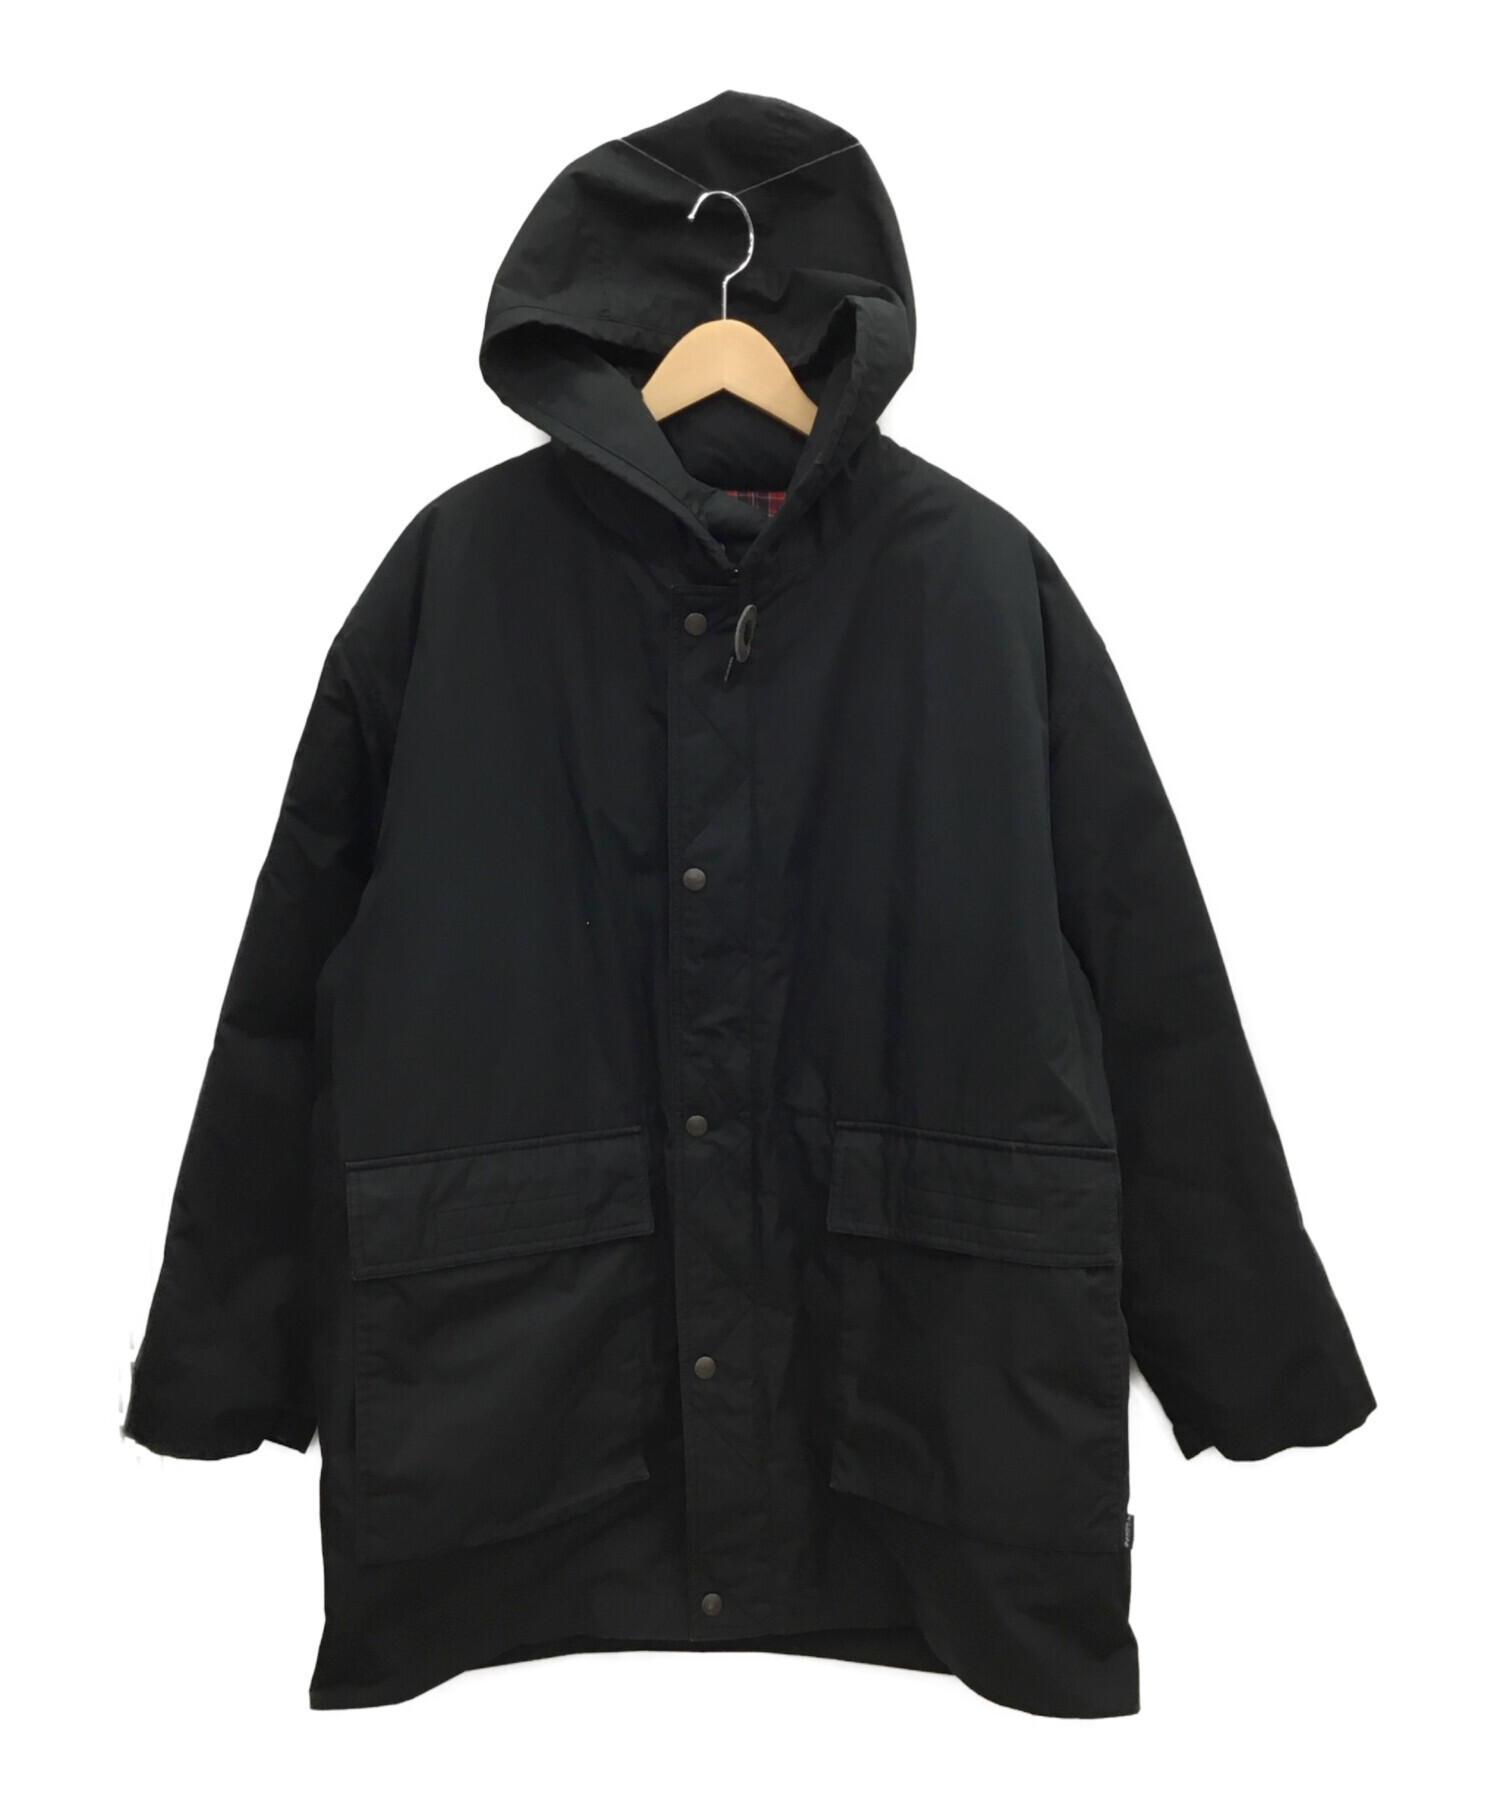 J.PRESS (ジェイプレス) 中綿ジャケット ブラック サイズ:L